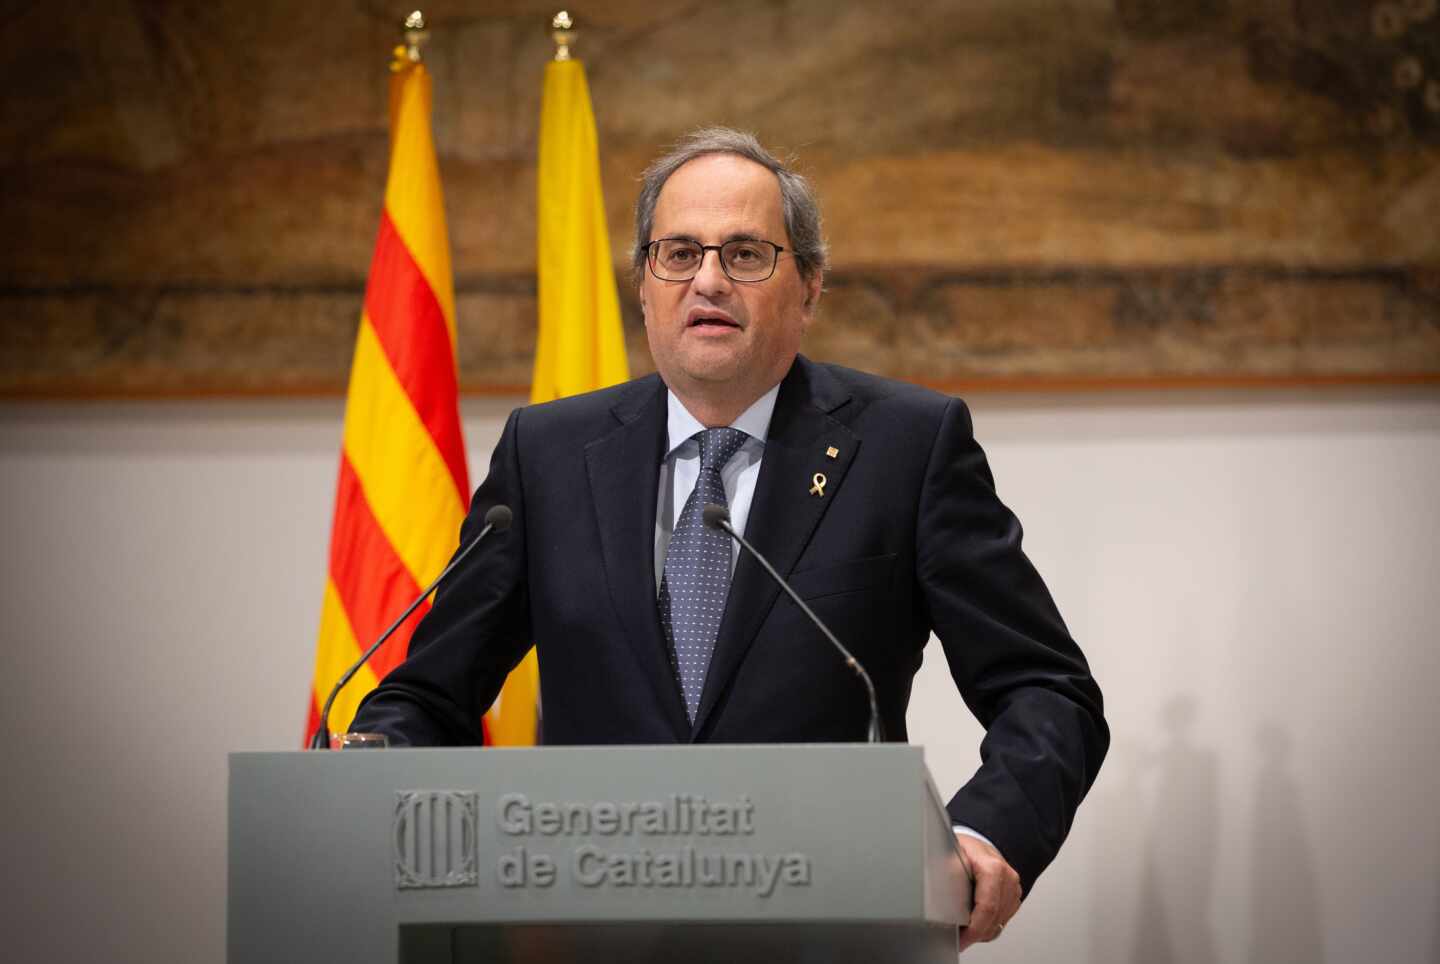 La Junta Electoral Central inhabilita a Torra y le fuerza a dimitir como presidente de la Generalitat